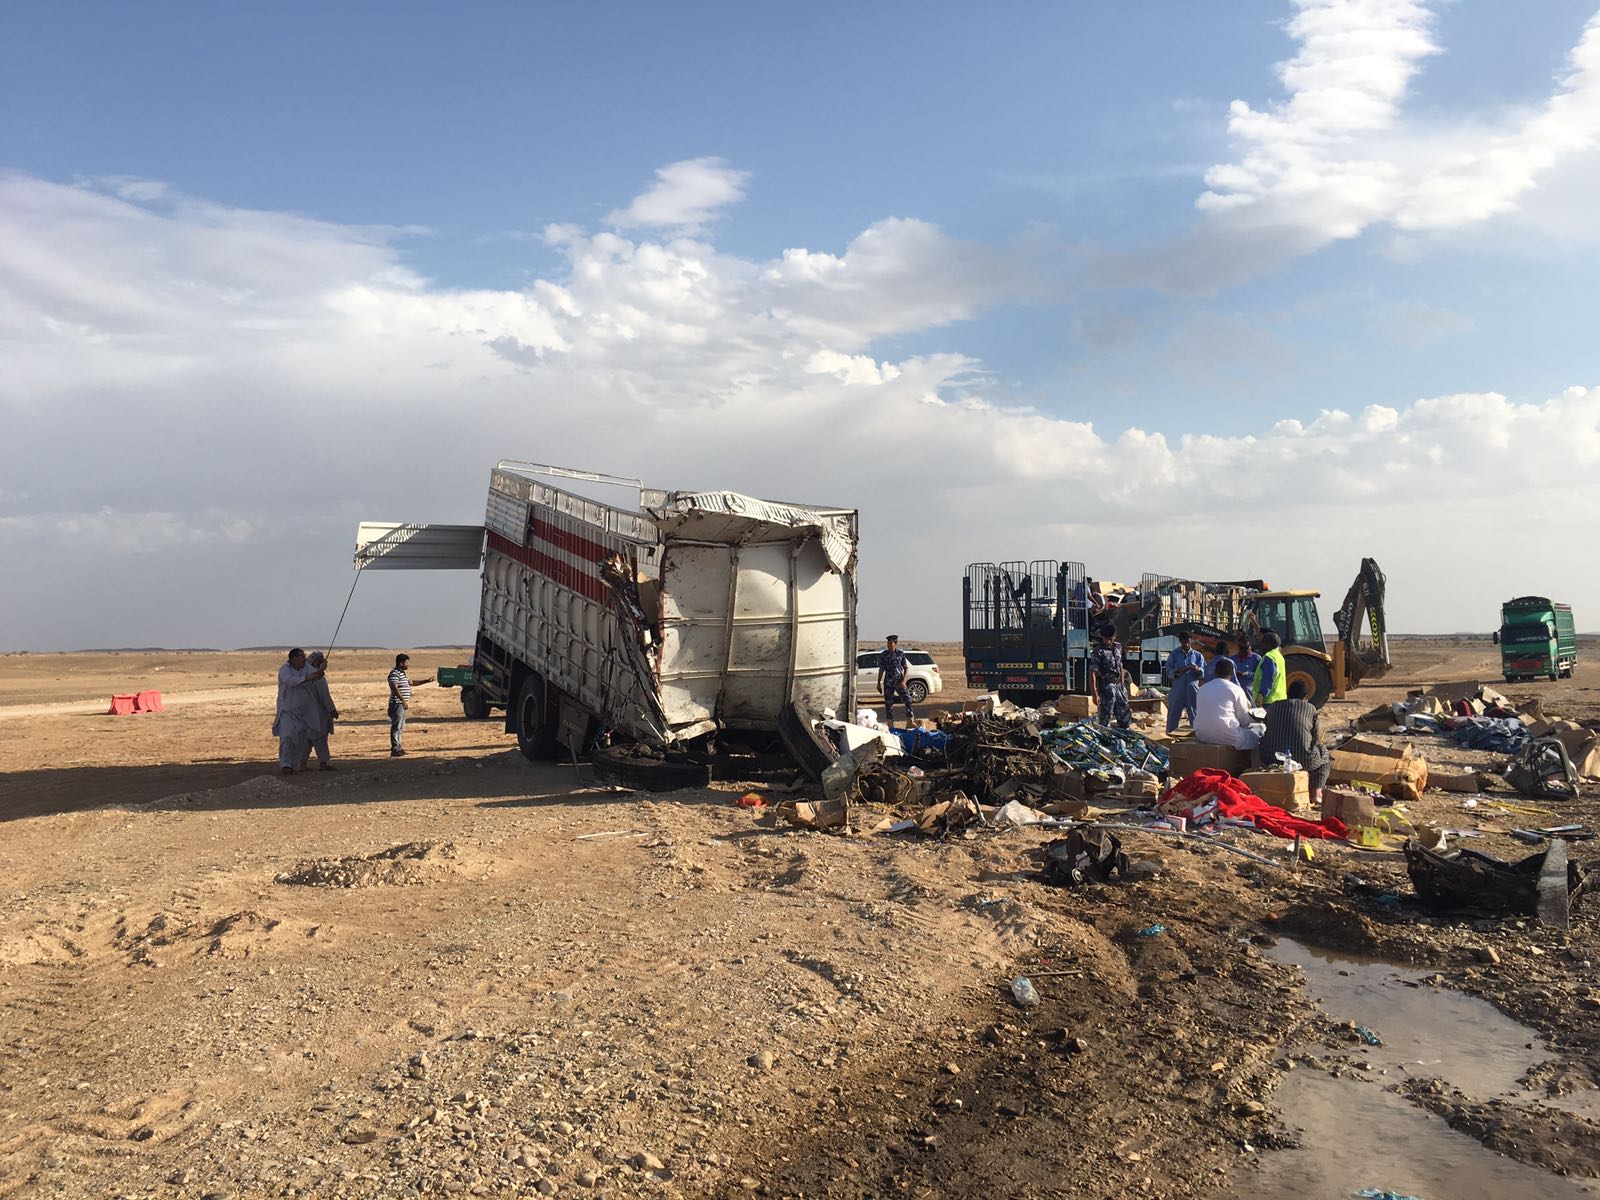 Oman accident: Questions trail tragic Ibri crash